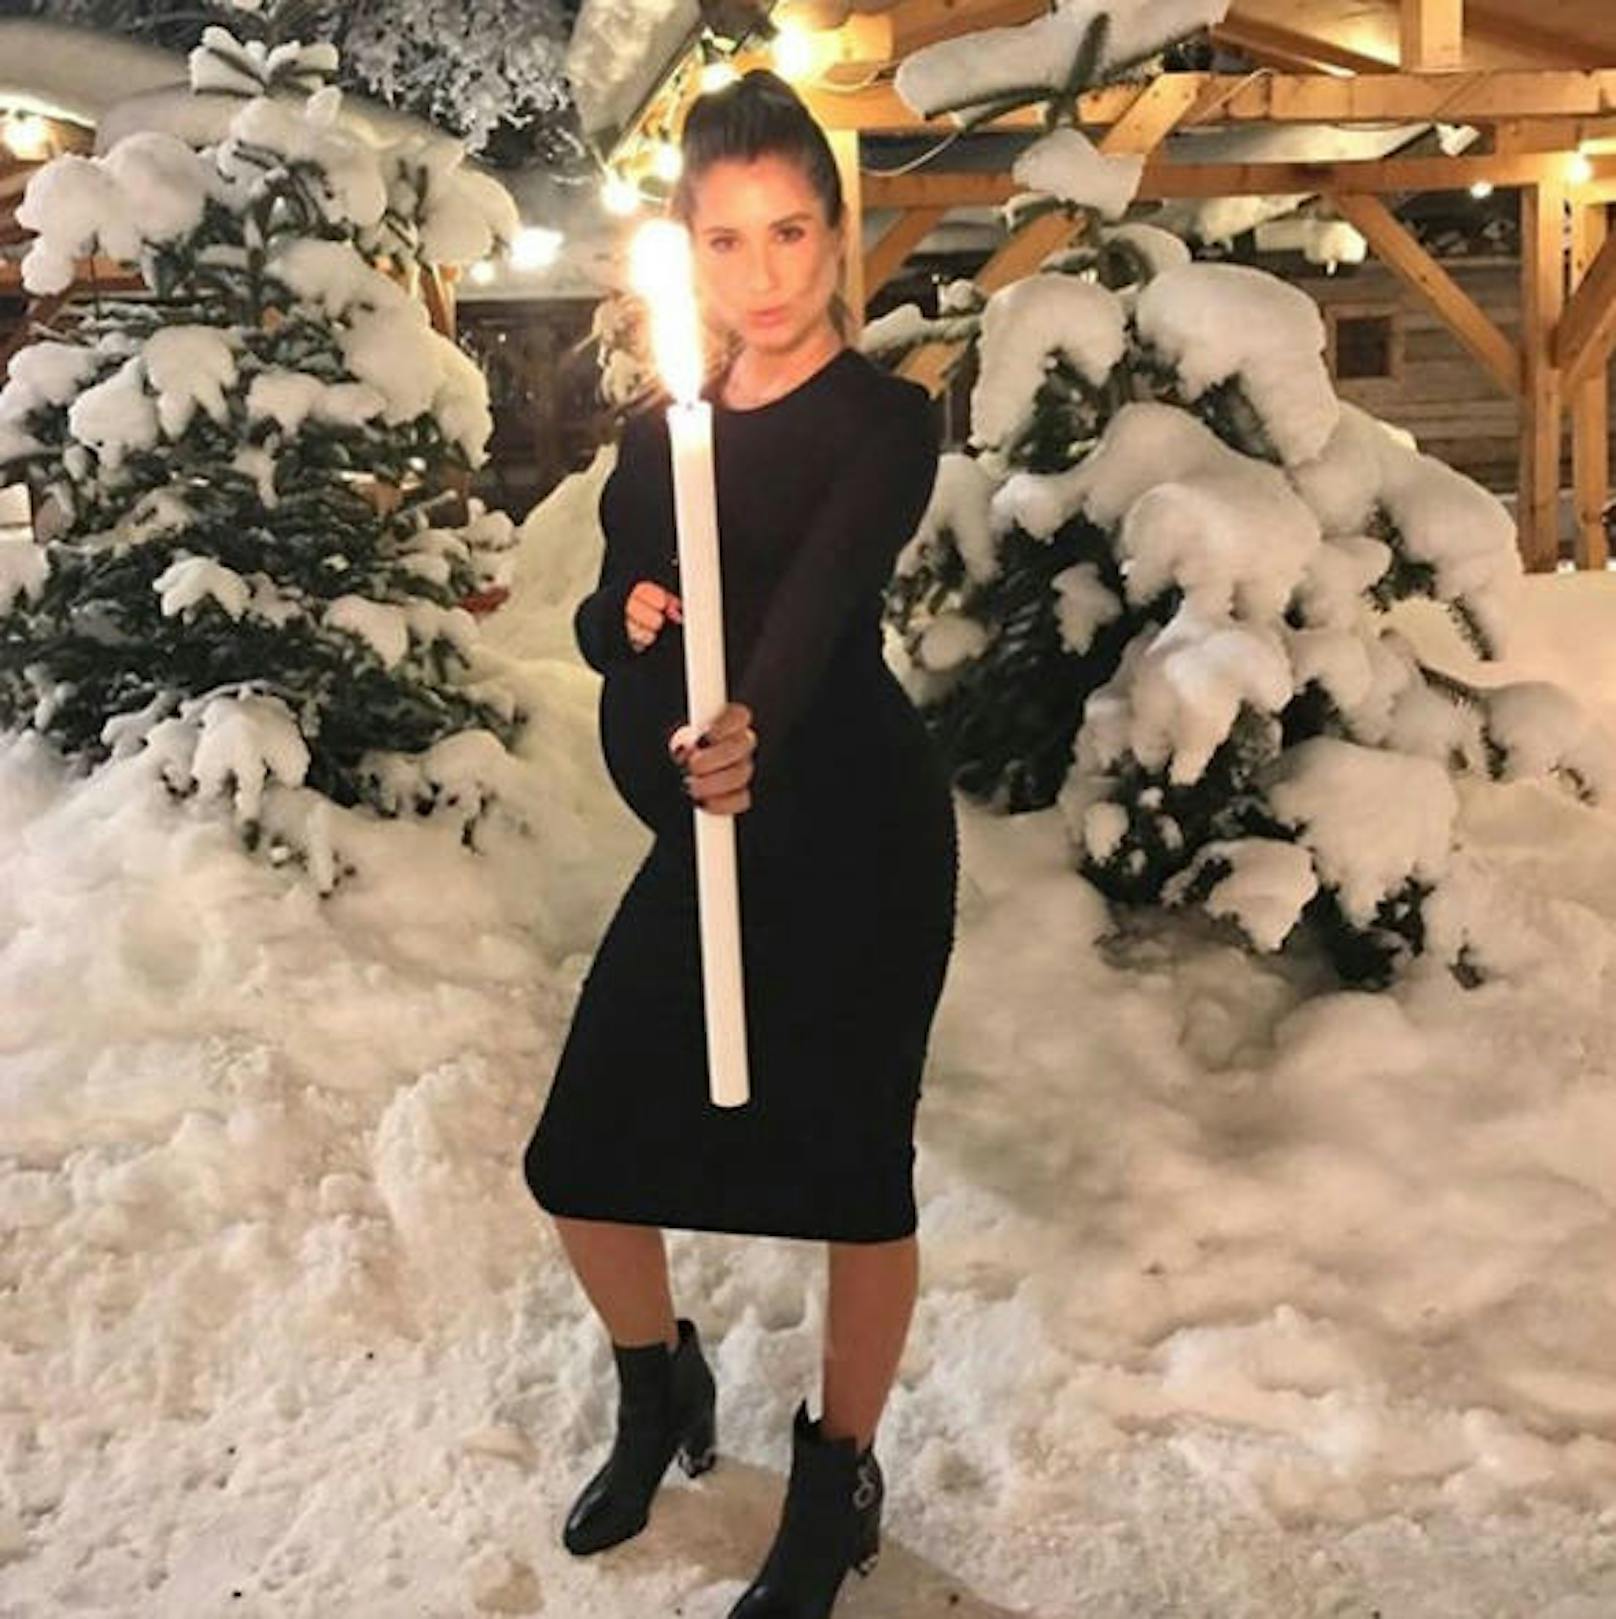 30.12.2017: Die hochschwangere Cathy Hummels (29) steht mit einer riesigen Kerze im Schnee. "Mother of Fire" nennt sie sich auf diesem Instagram-Foto.